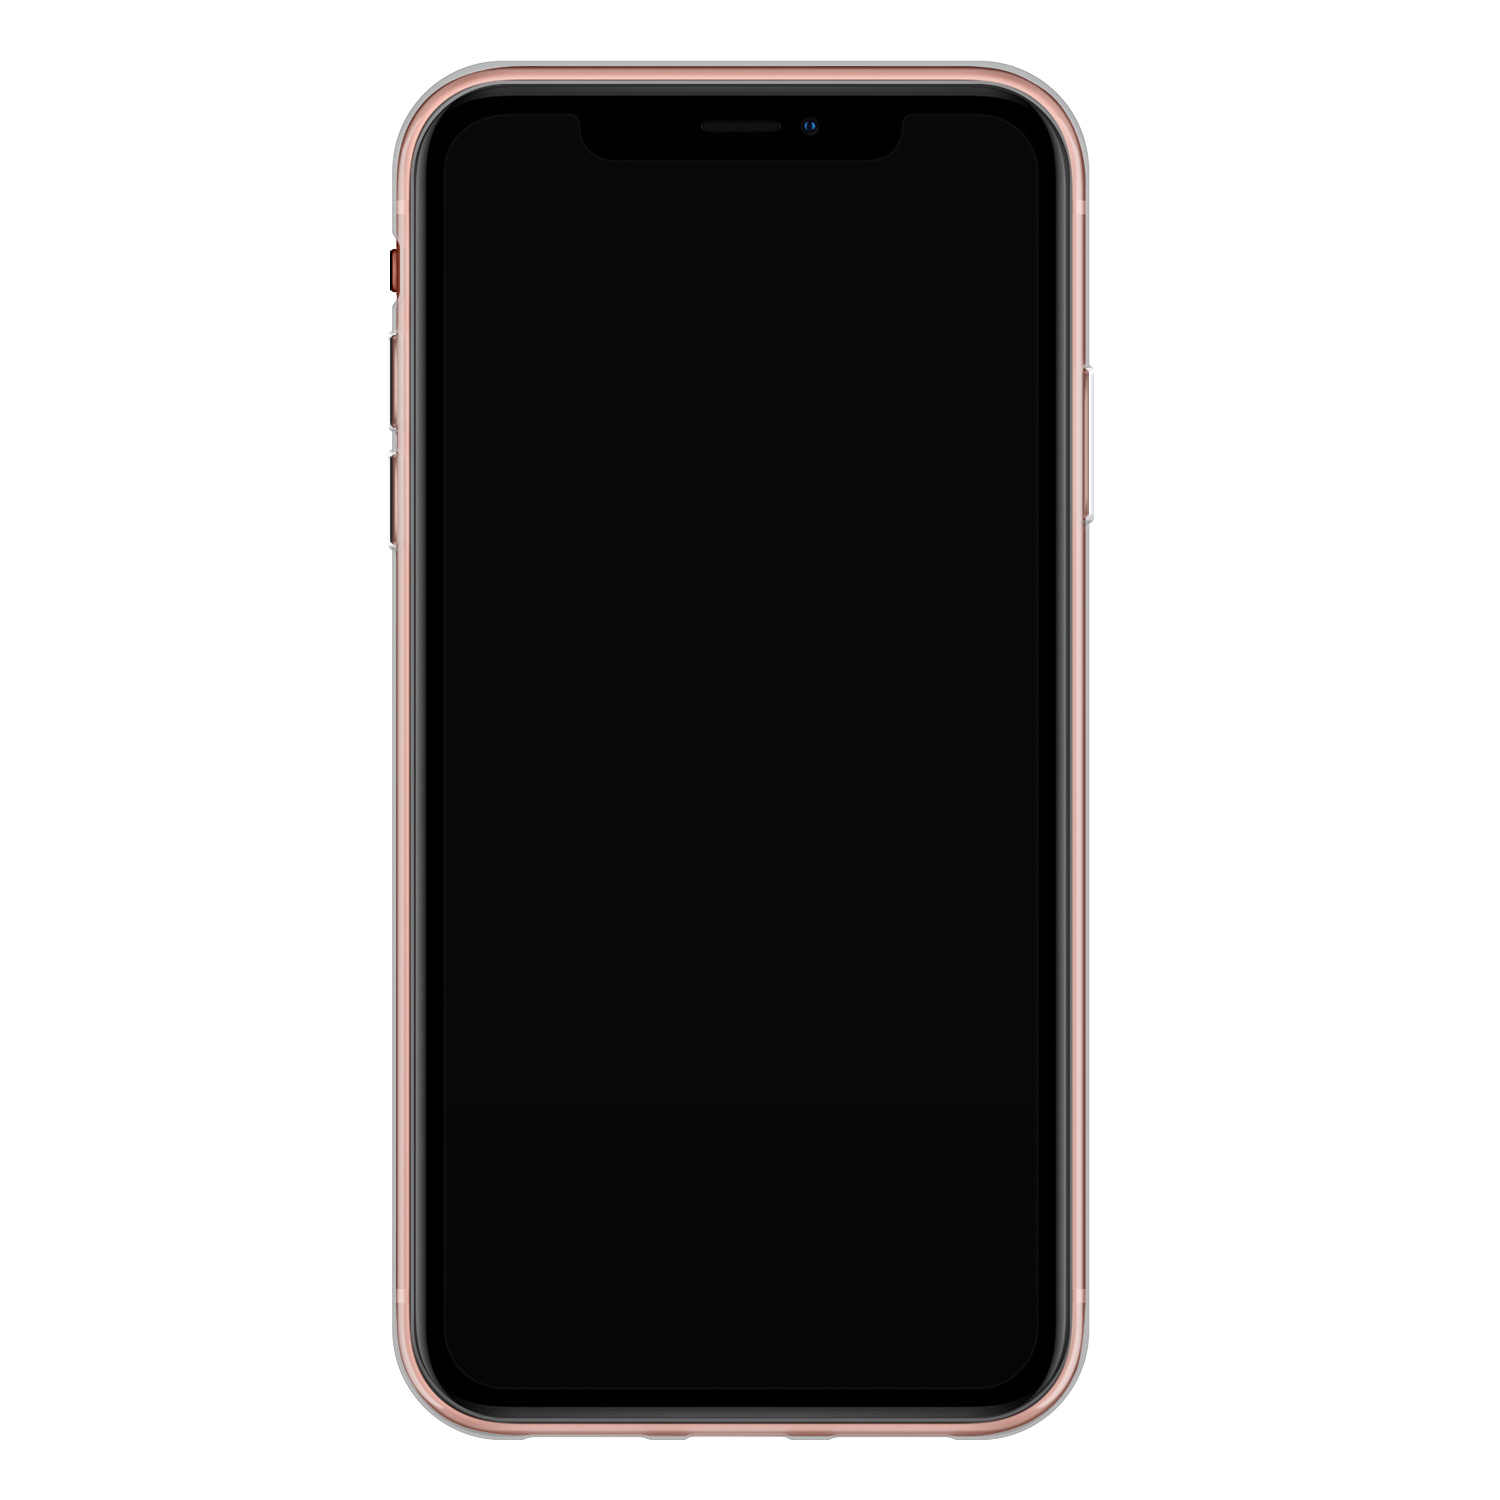 Leuke Telefoonhoesjes iPhone XR siliconen hoesje - Marmer roze goud